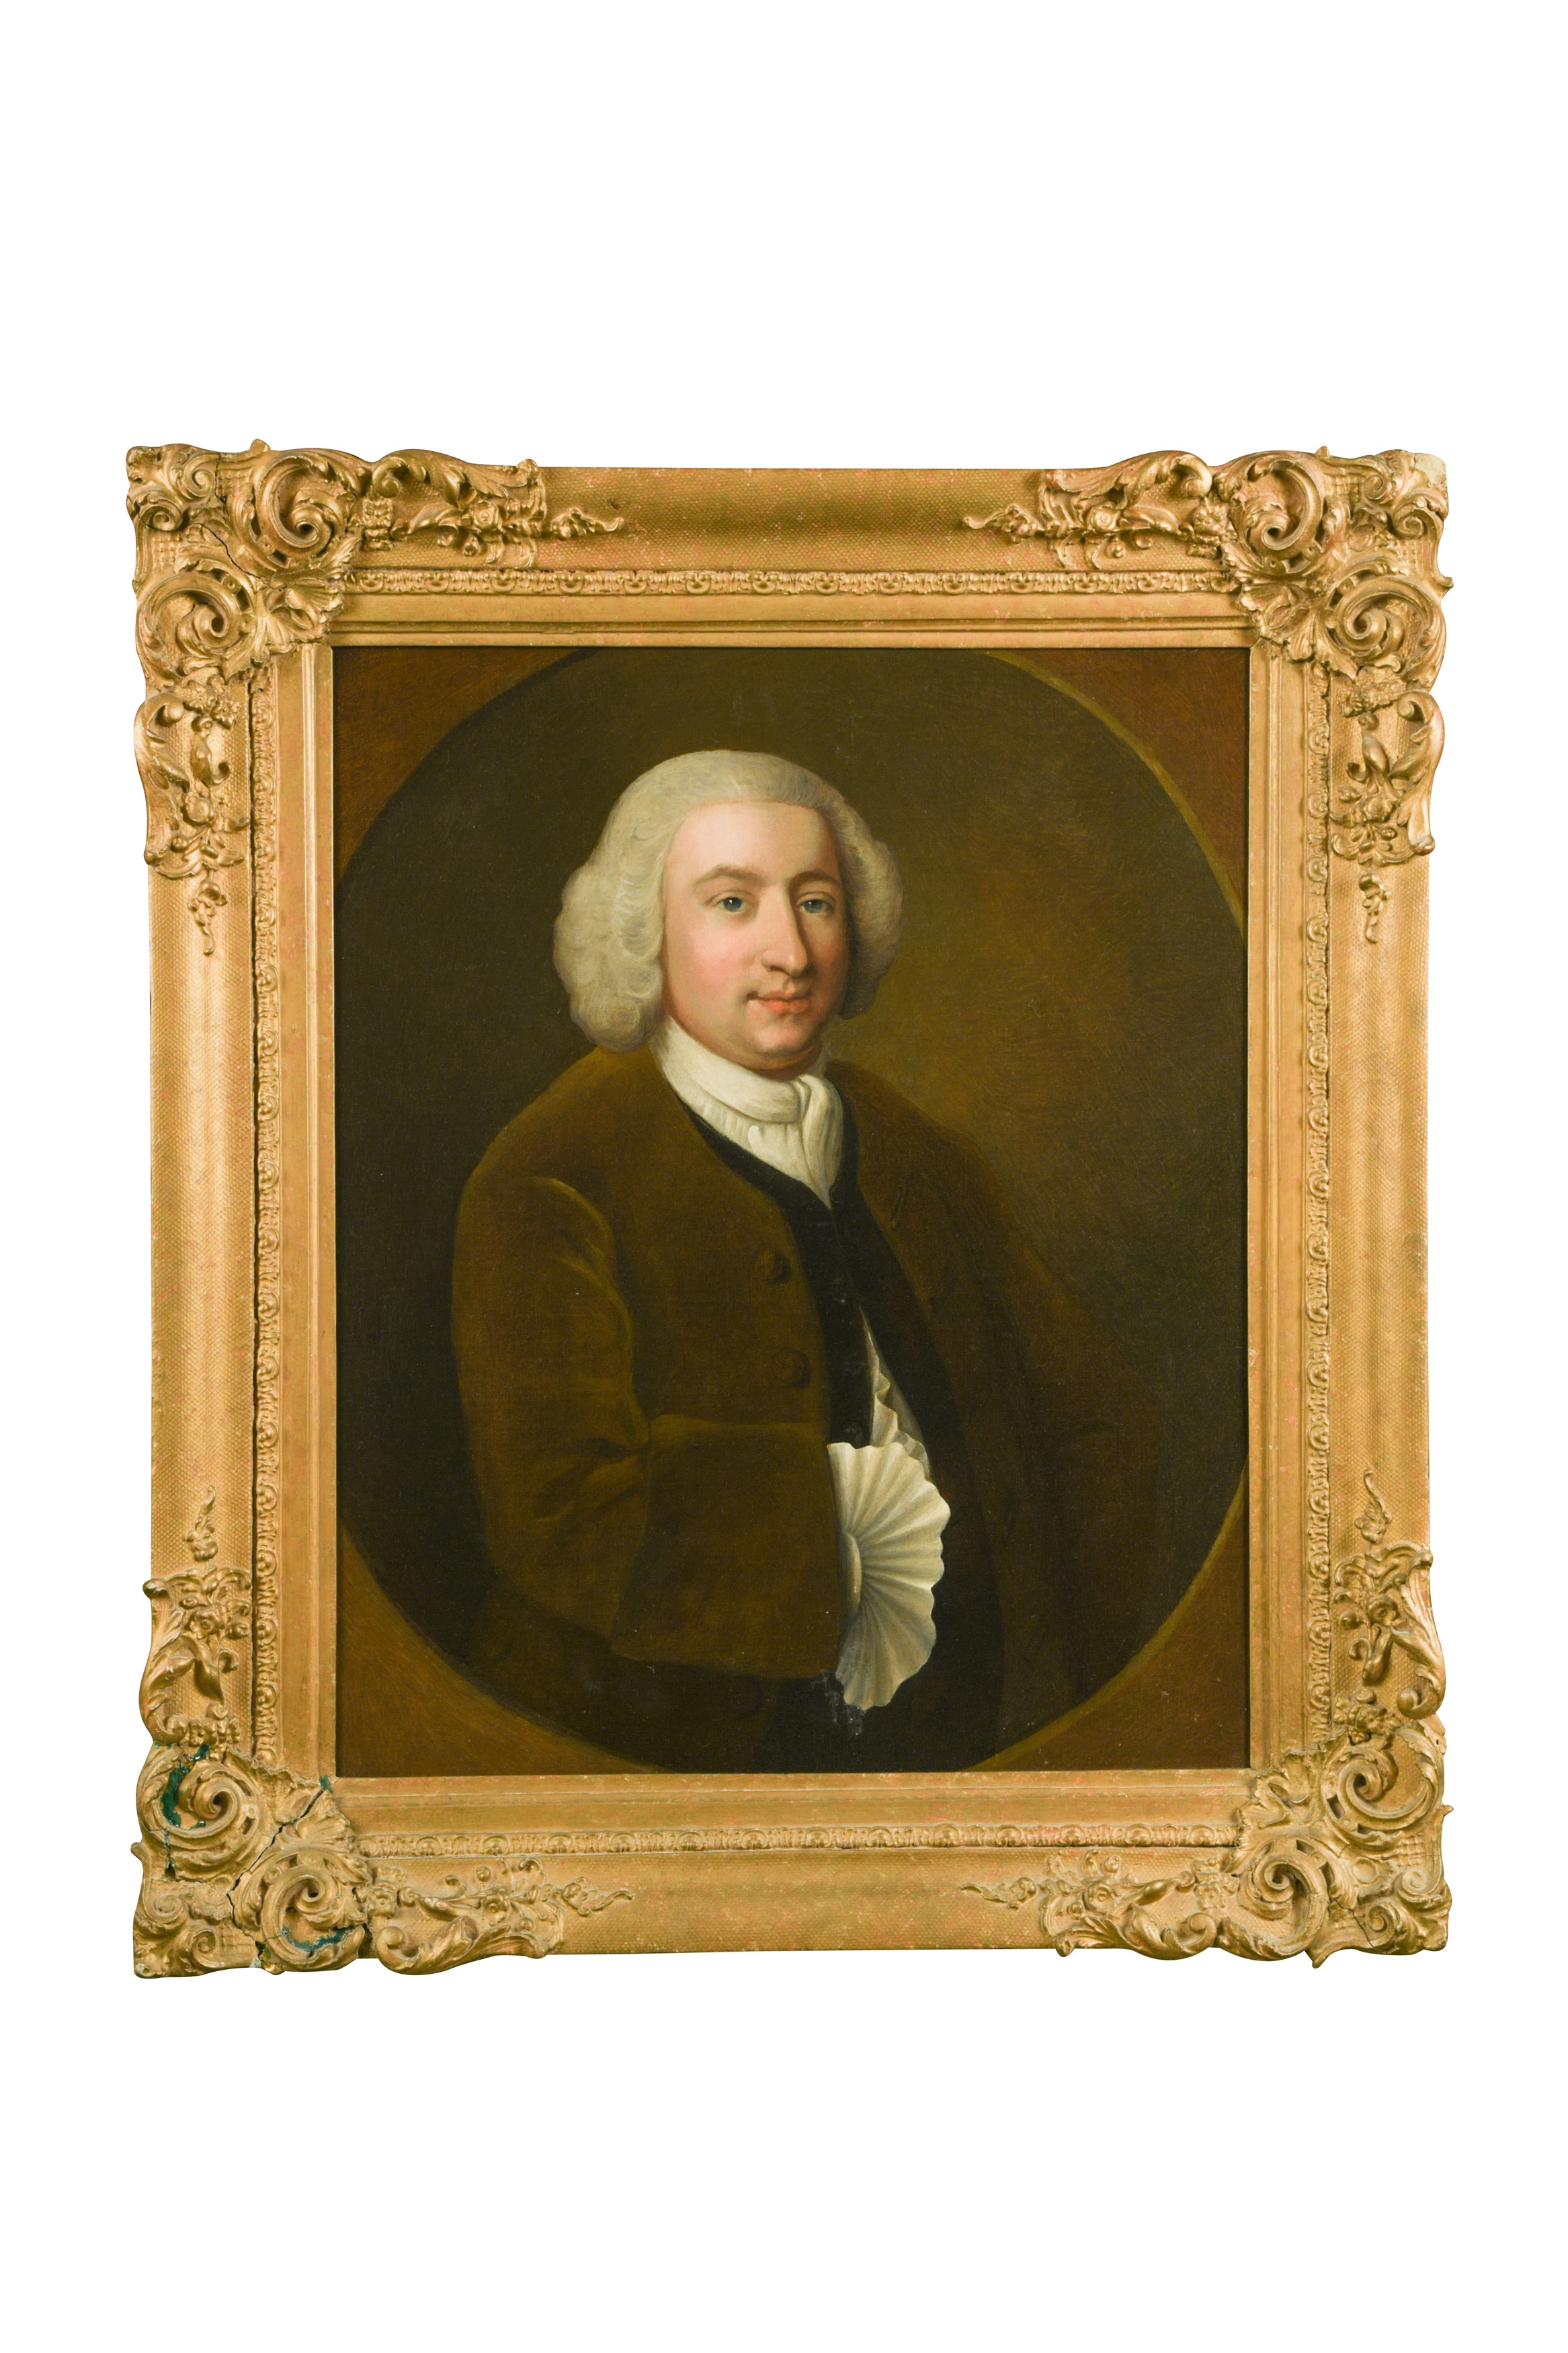 Attributed to Sir Joshua Reynolds PRA, FRS, FRSA (British, 1723-1792) Portrait of Josiah Graham of